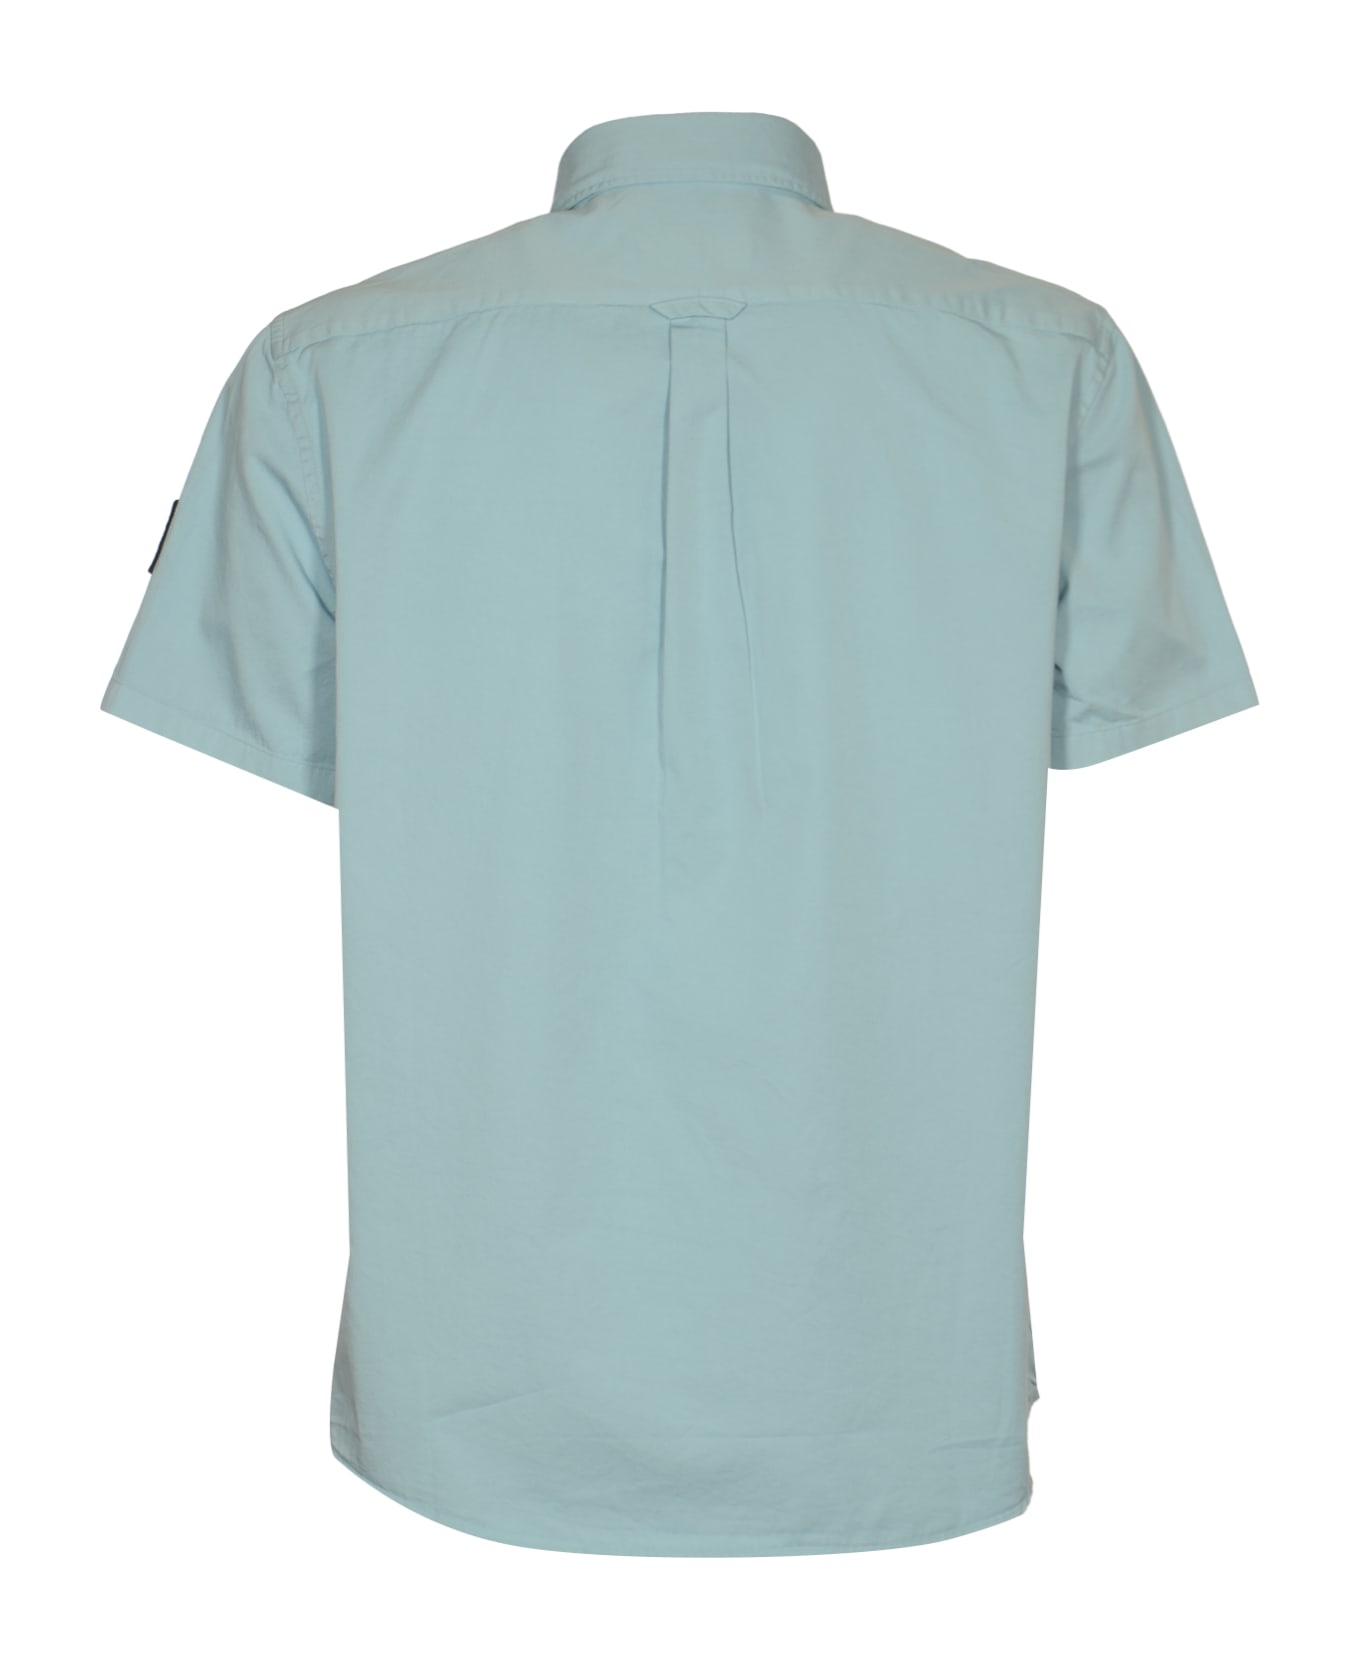 Belstaff Scale Short-sleeved Shirt - Skyline Blue